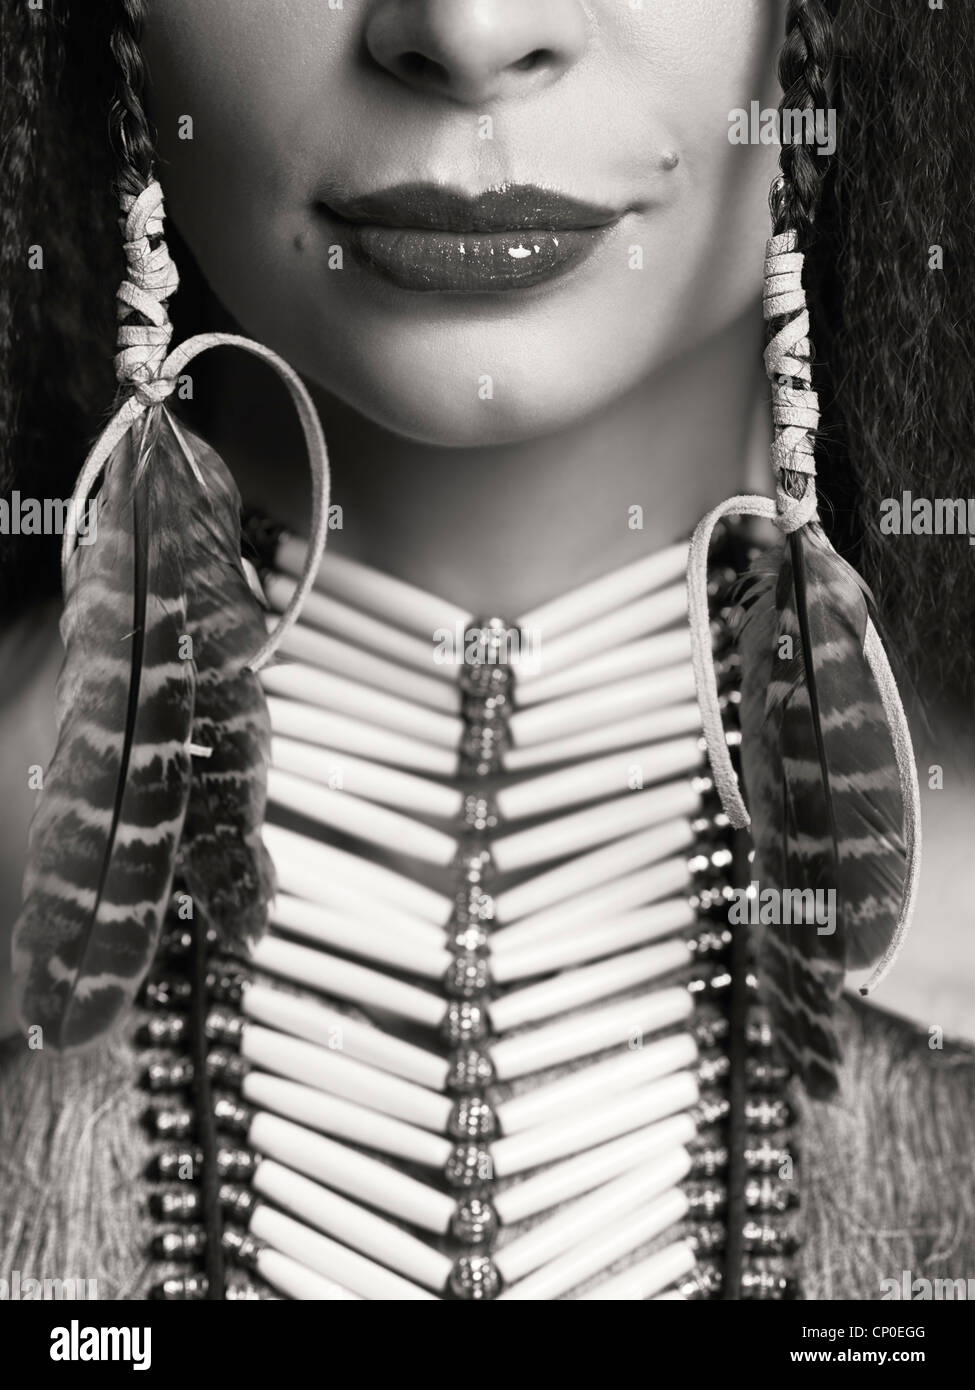 Führerschein und Fingerabdrücke auf MaximImages.com - künstlerisches Nahaufnahmen-Schönheitsporträt einer Frau, die in ihr einheimische Accessoires mit Halskette und Federn trägt Stockfoto